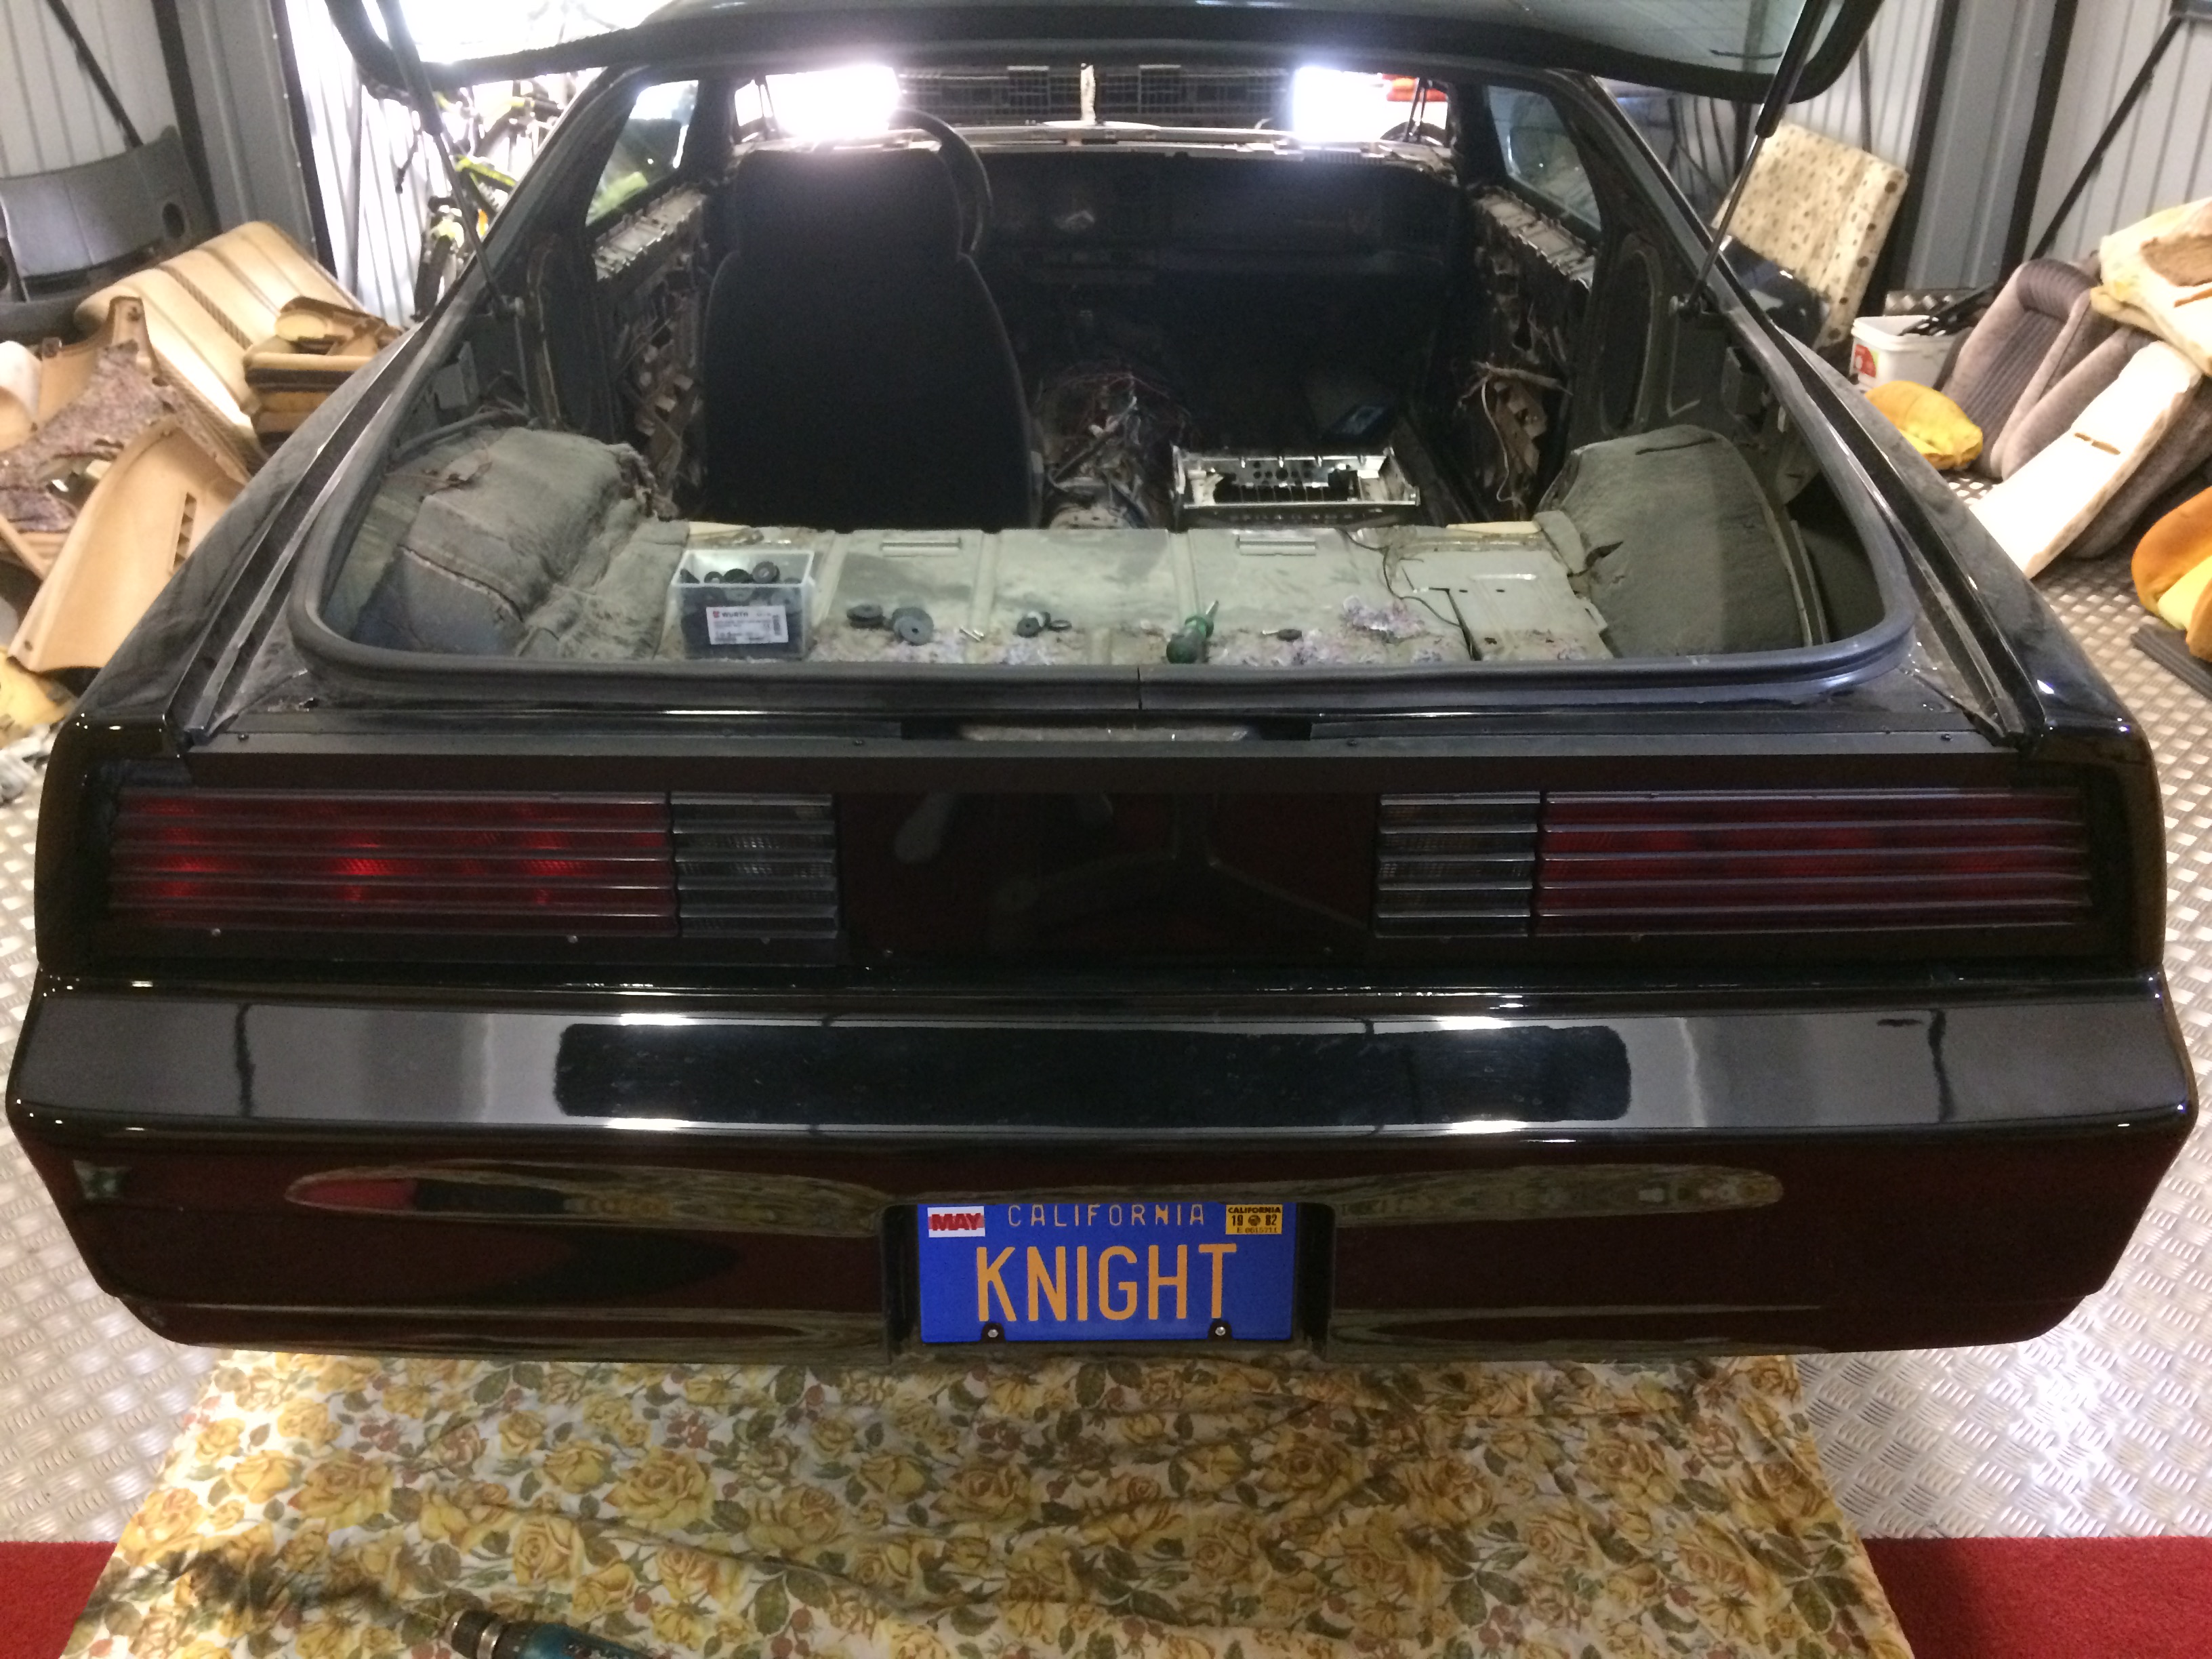 Knight Rider KITT Replica